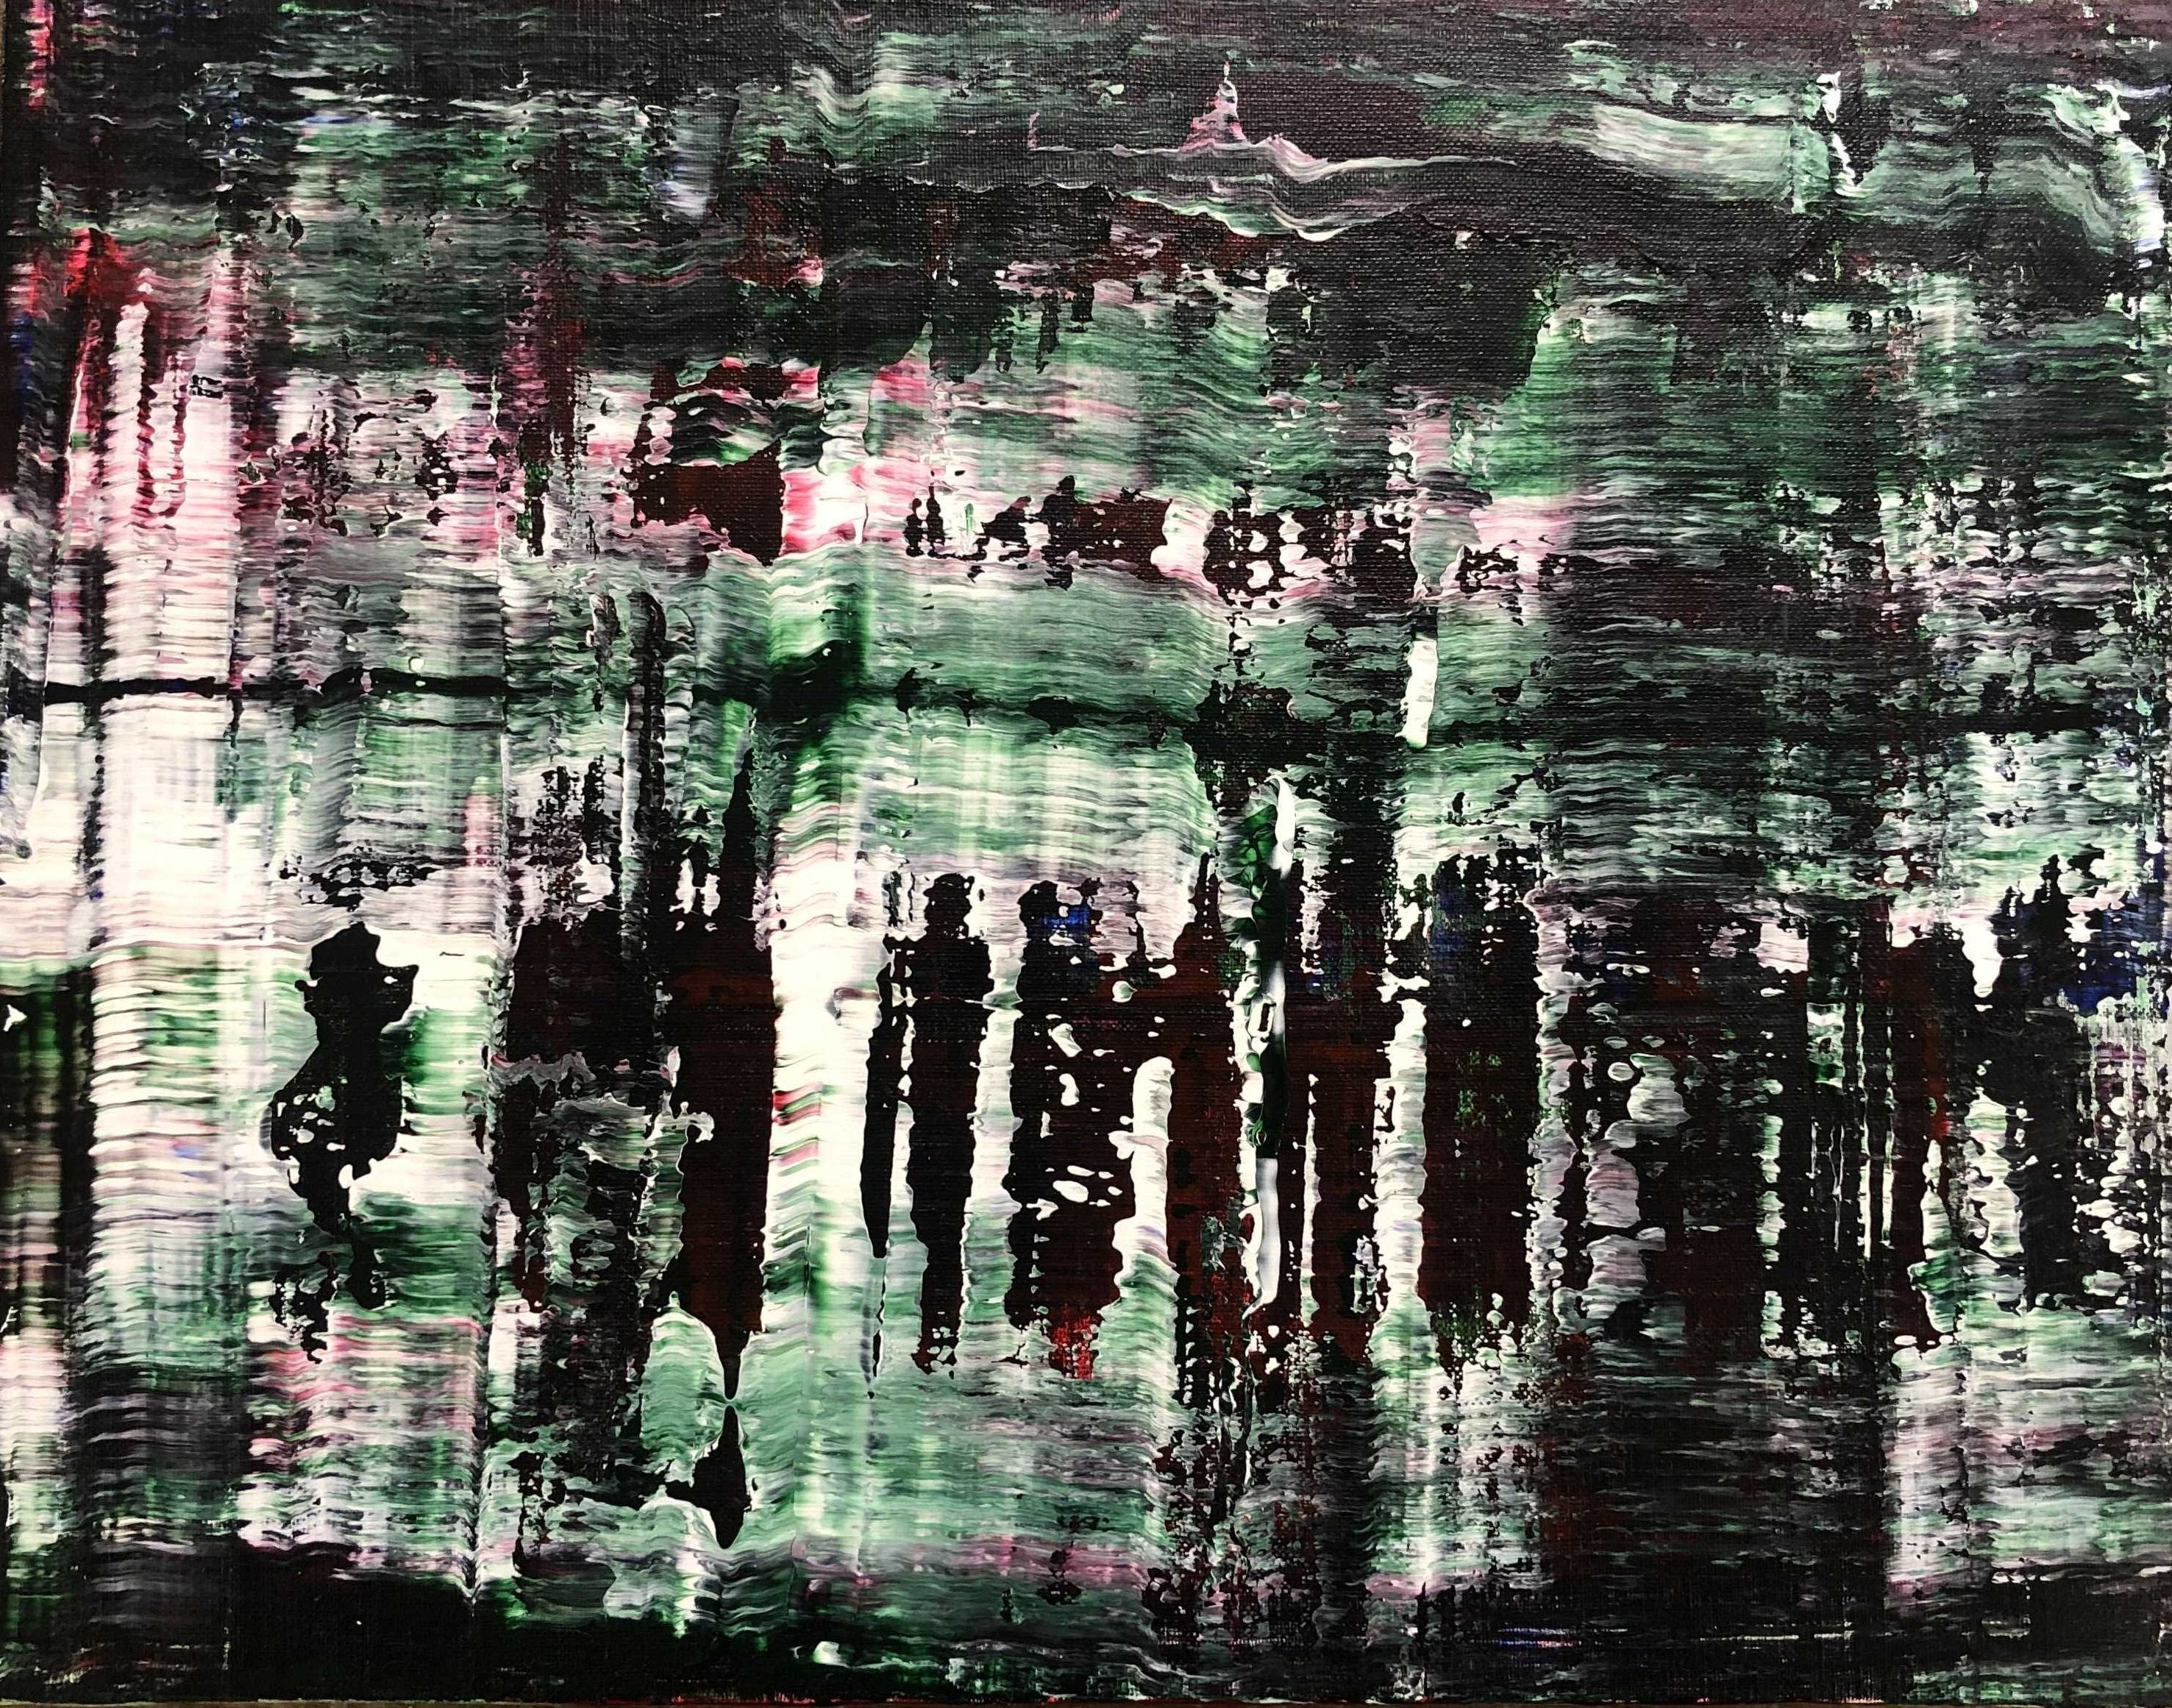 05月01日 (水) 11:00-14:00 | 日本橋 | ゲルハルト・リヒター風抽象画 (Original abstruct painting with Gerhard Richter style at Nihon-bashi)